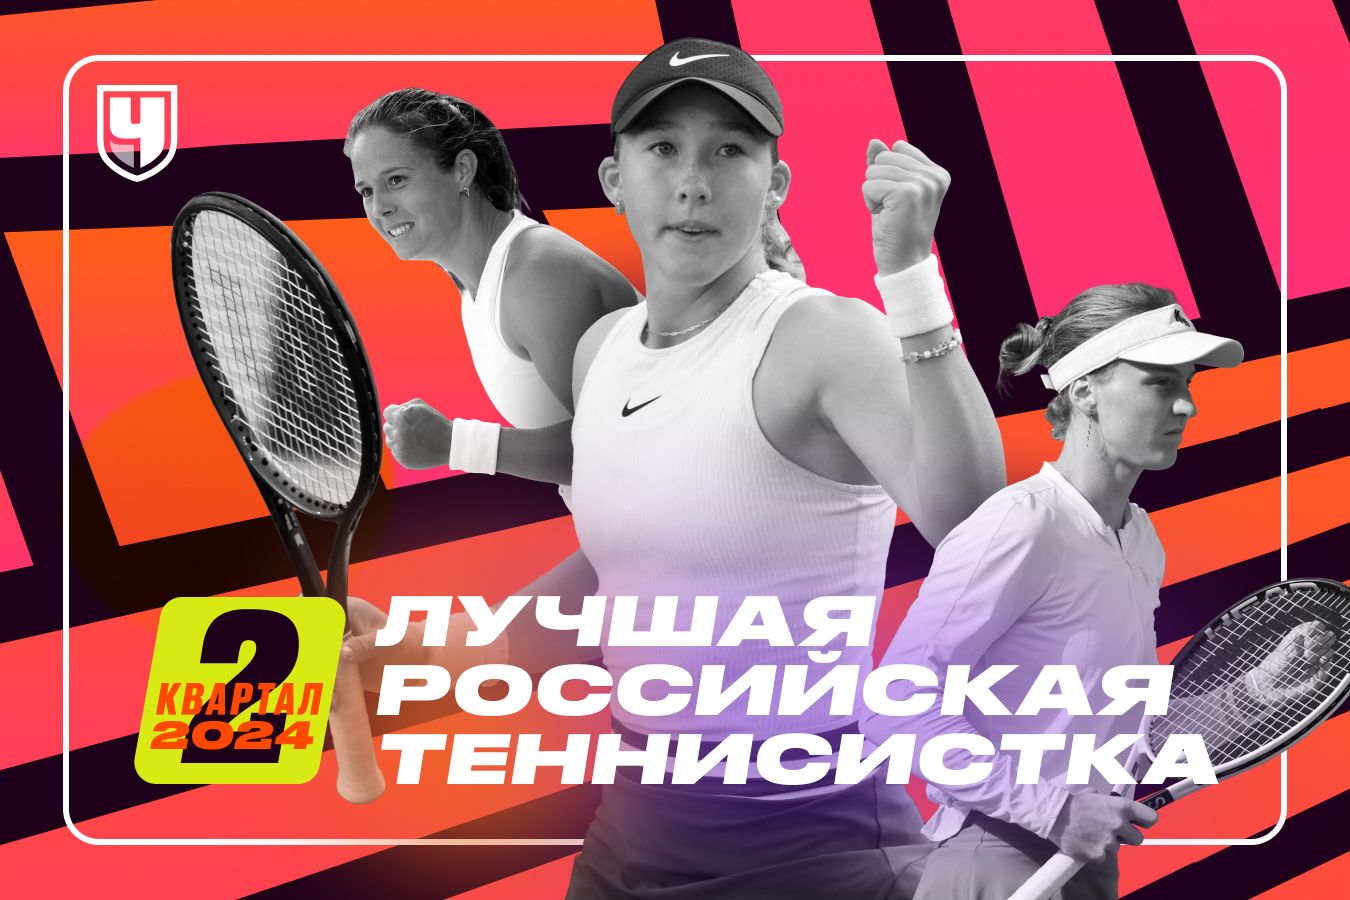 Лучшая теннисистка России — Мирра Андреева! Рейтинг «Чемпионата»: второй квартал 2024 года